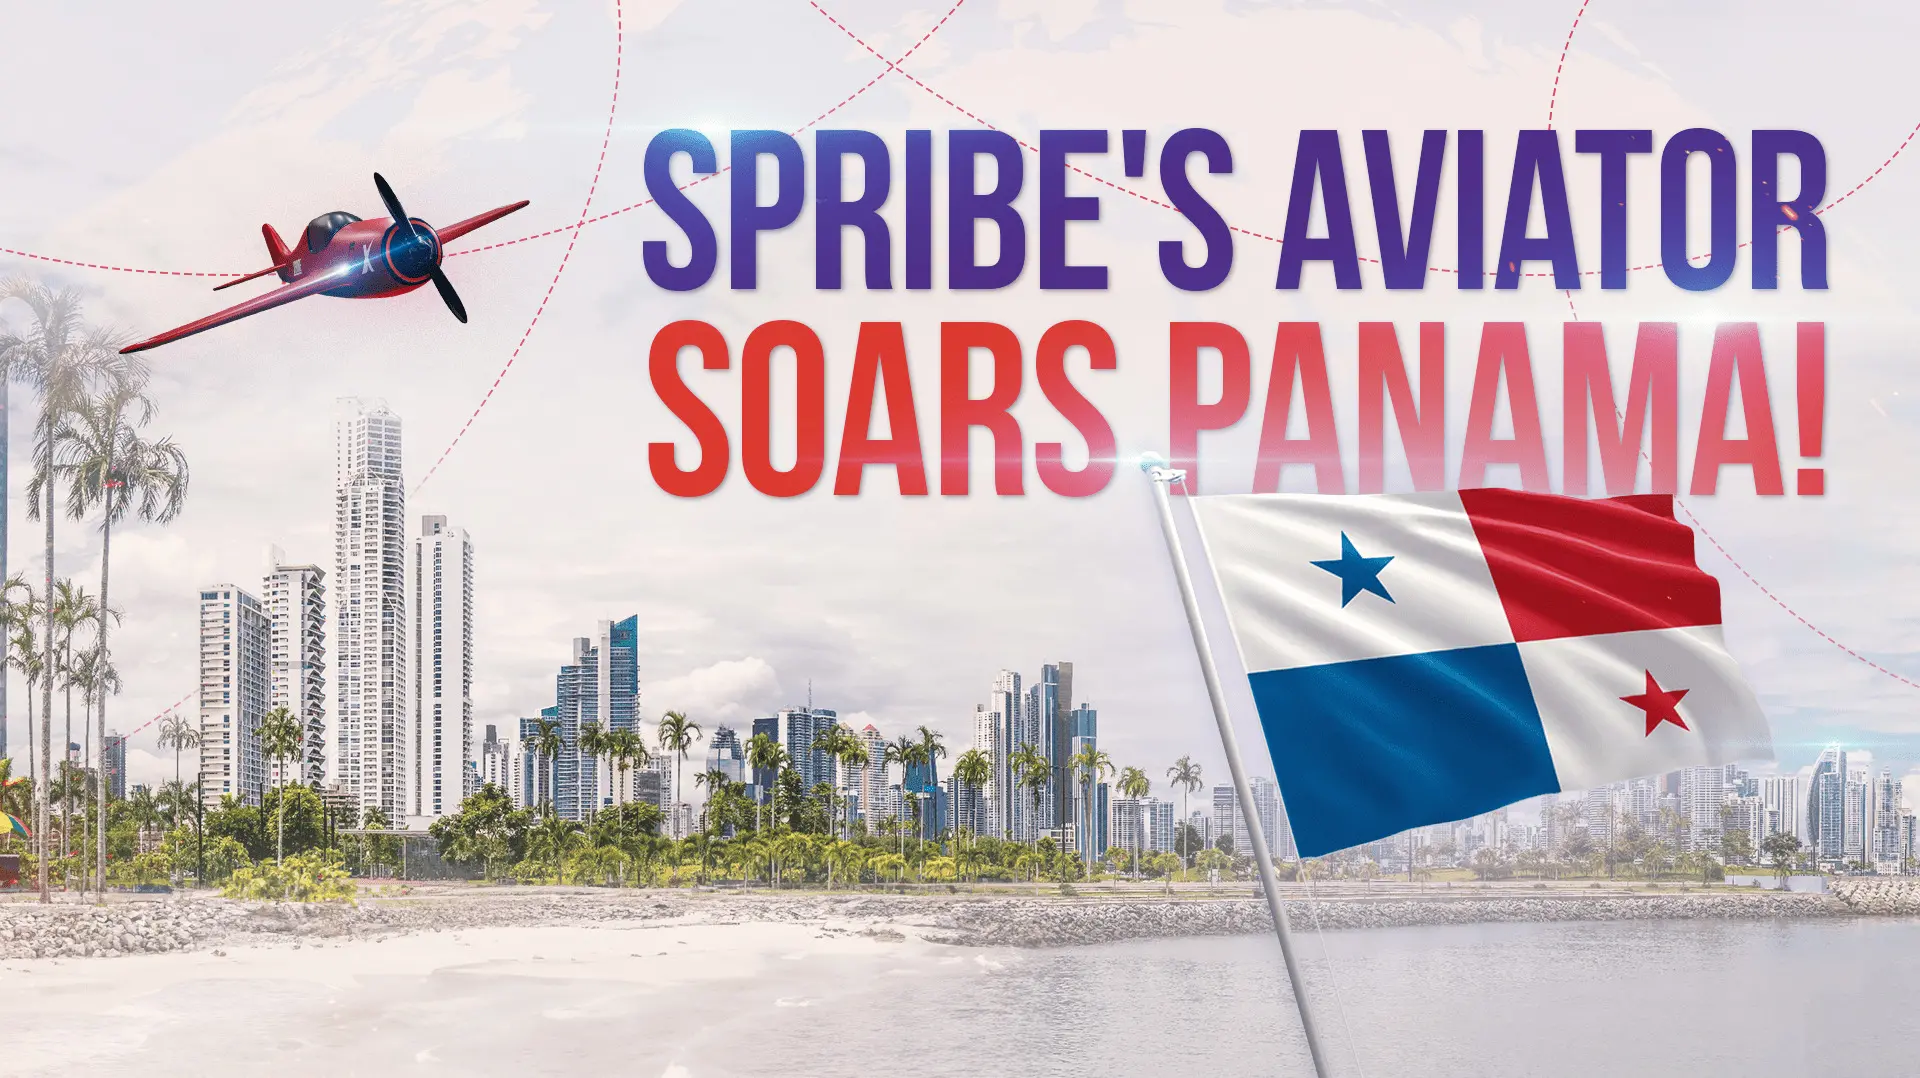 Az Aviator Panamában debütál, amikor a SPRIBE megkapta a hatósági jóváhagyást